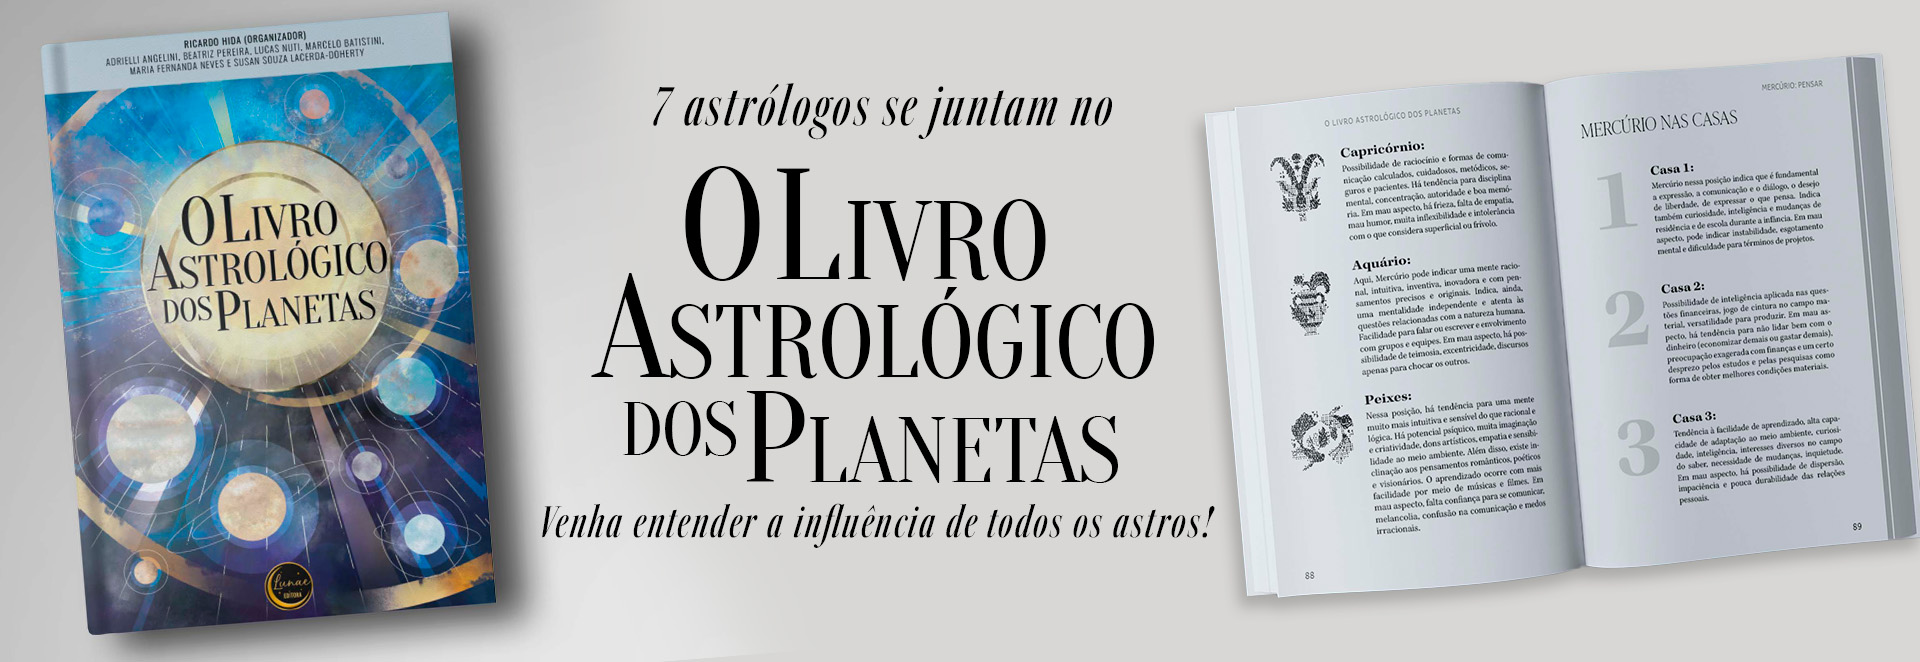 O Livro Astrológico dos Planetas